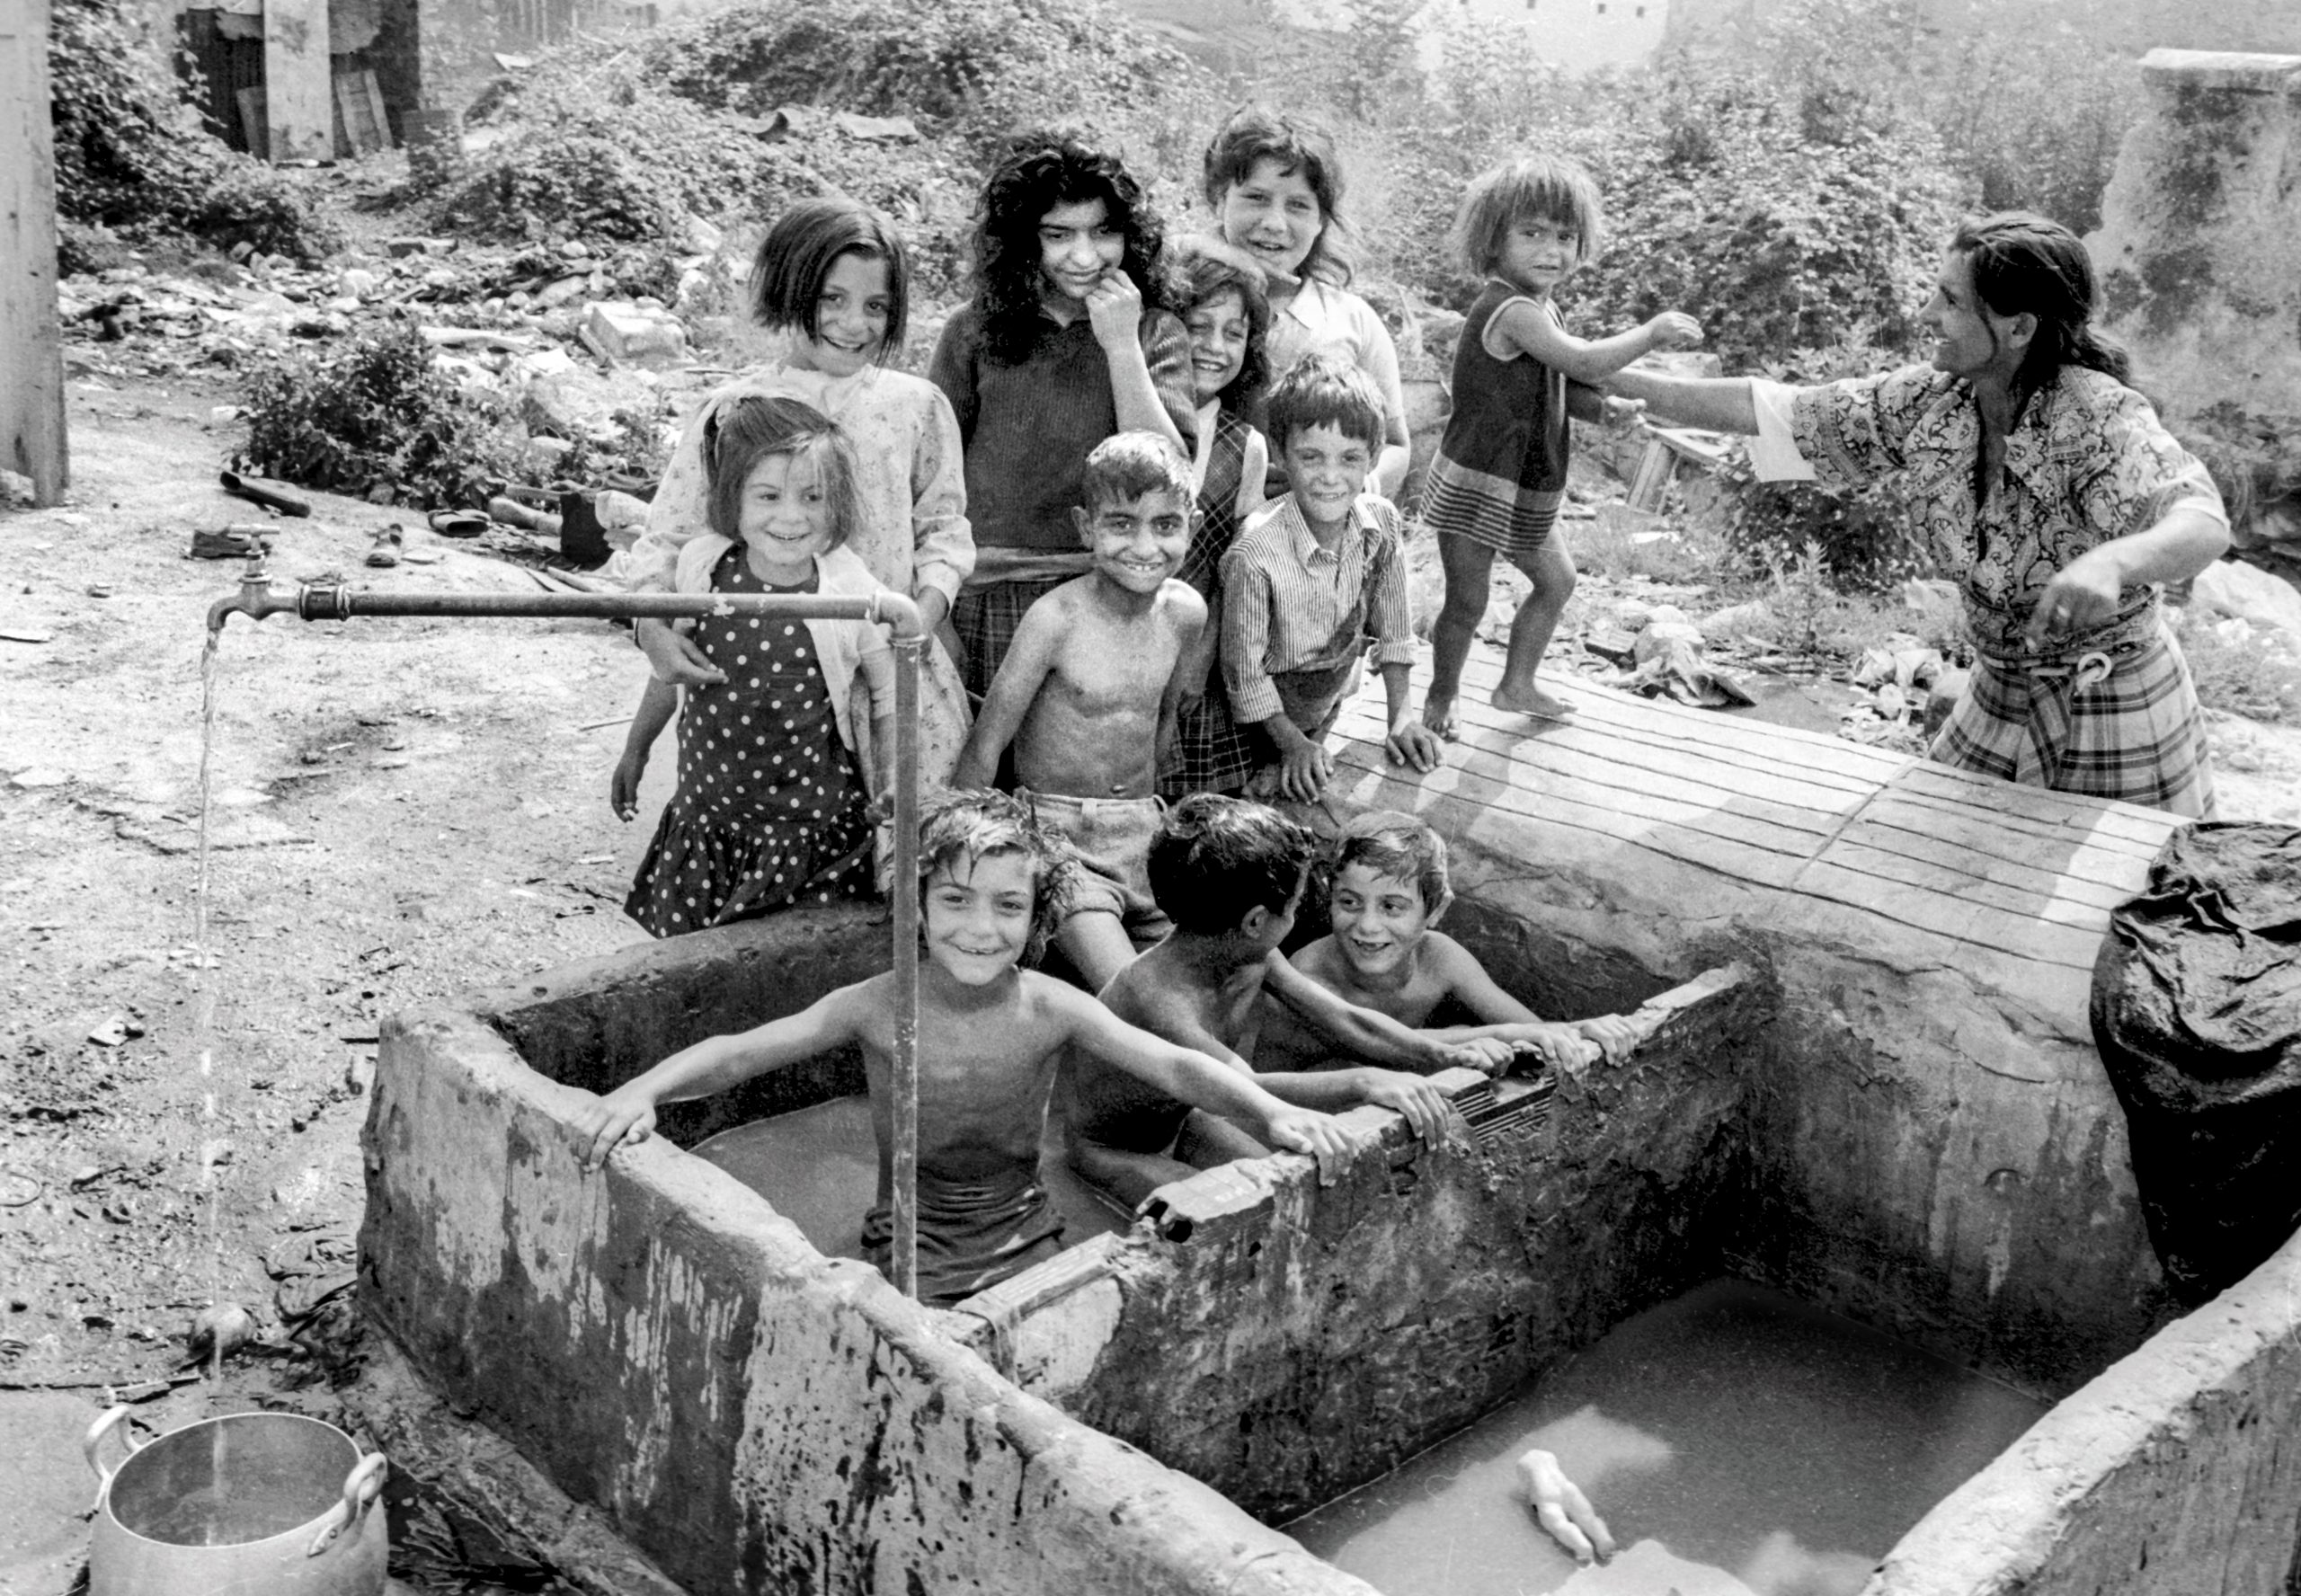 Chavolas de A Cubela, en el corazón de A Coruña. Niños bañándose en un pilón de lavar la ropa.